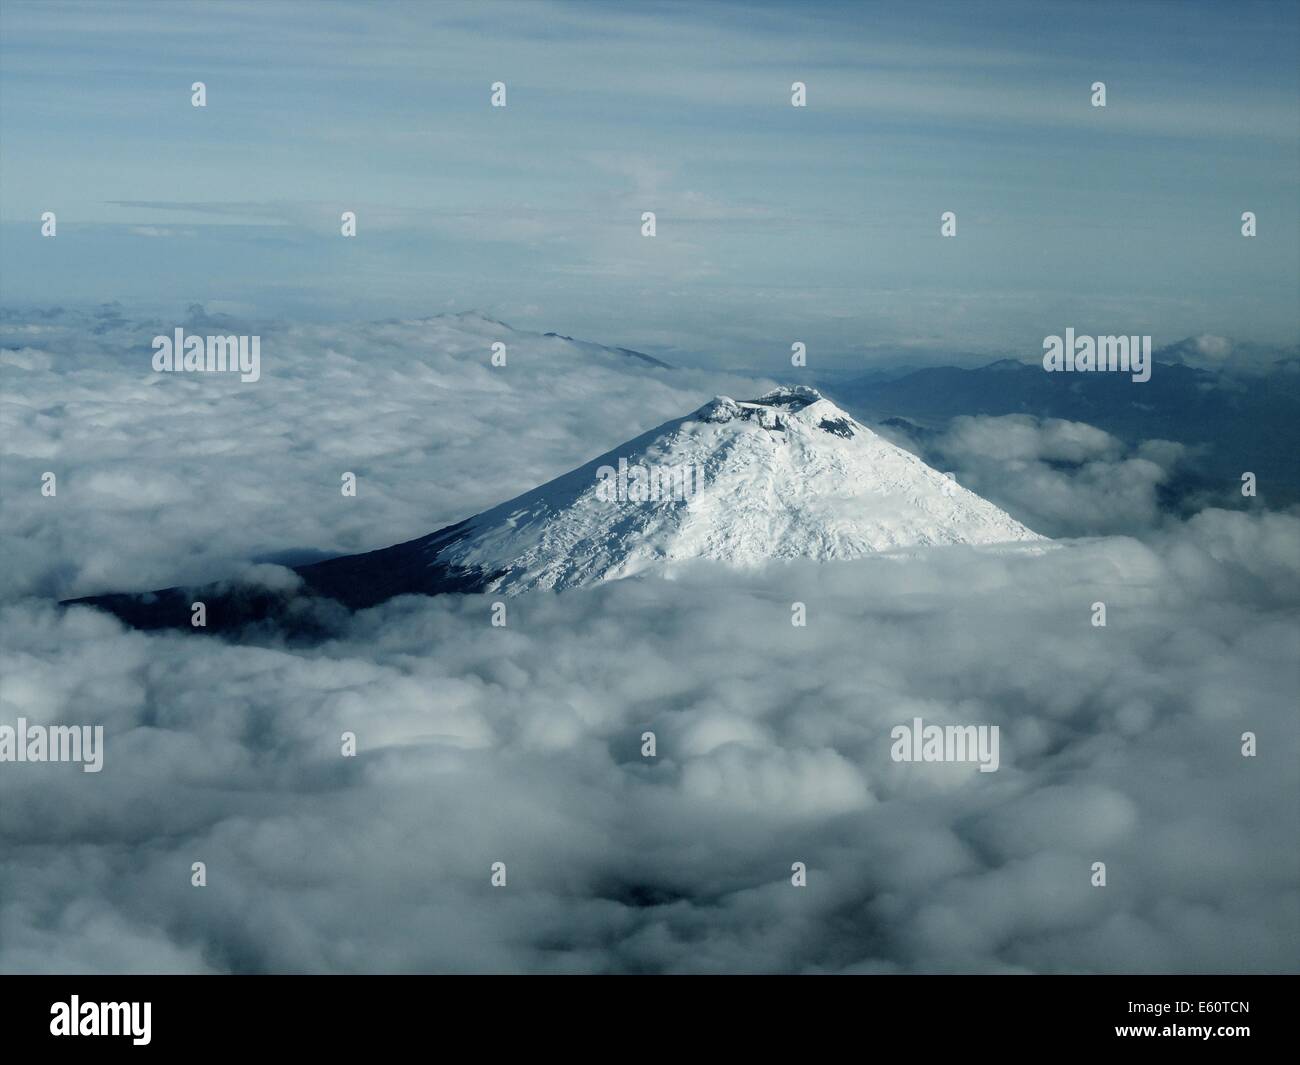 Aerial view of Cotopaxi volcano in Ecuador Stock Photo